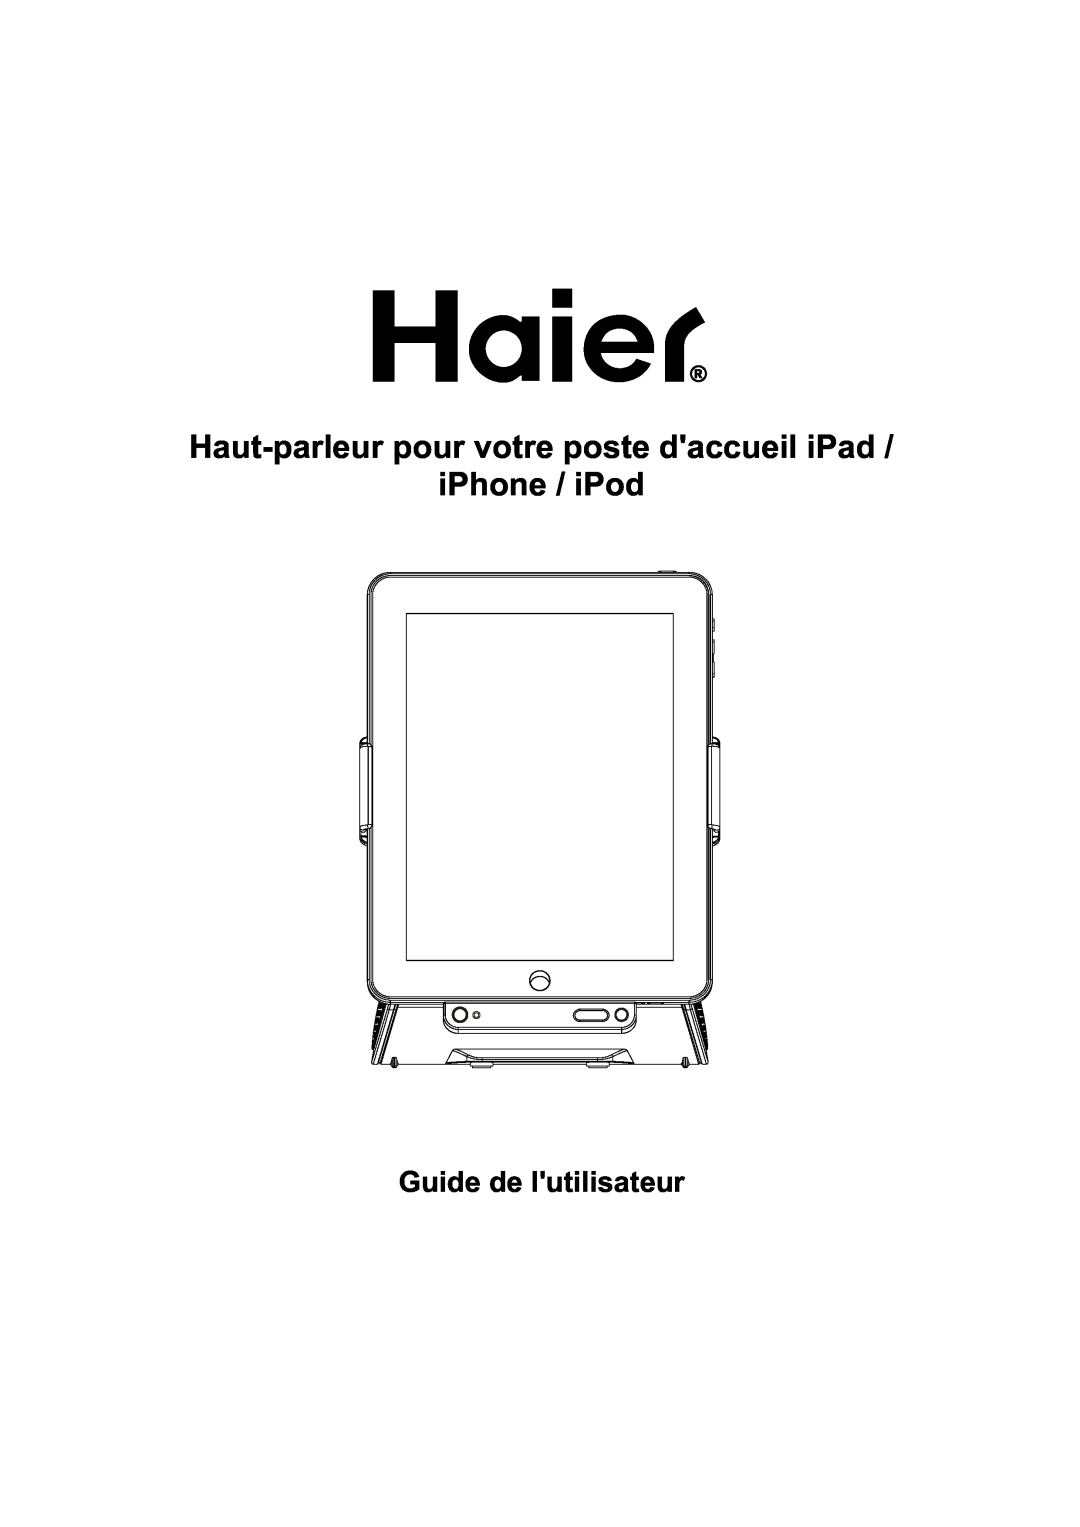 Haier IPD-01 manual Haut-parleurpour votre poste daccueil iPad, iPhone / iPod, Guide de lutilisateur 